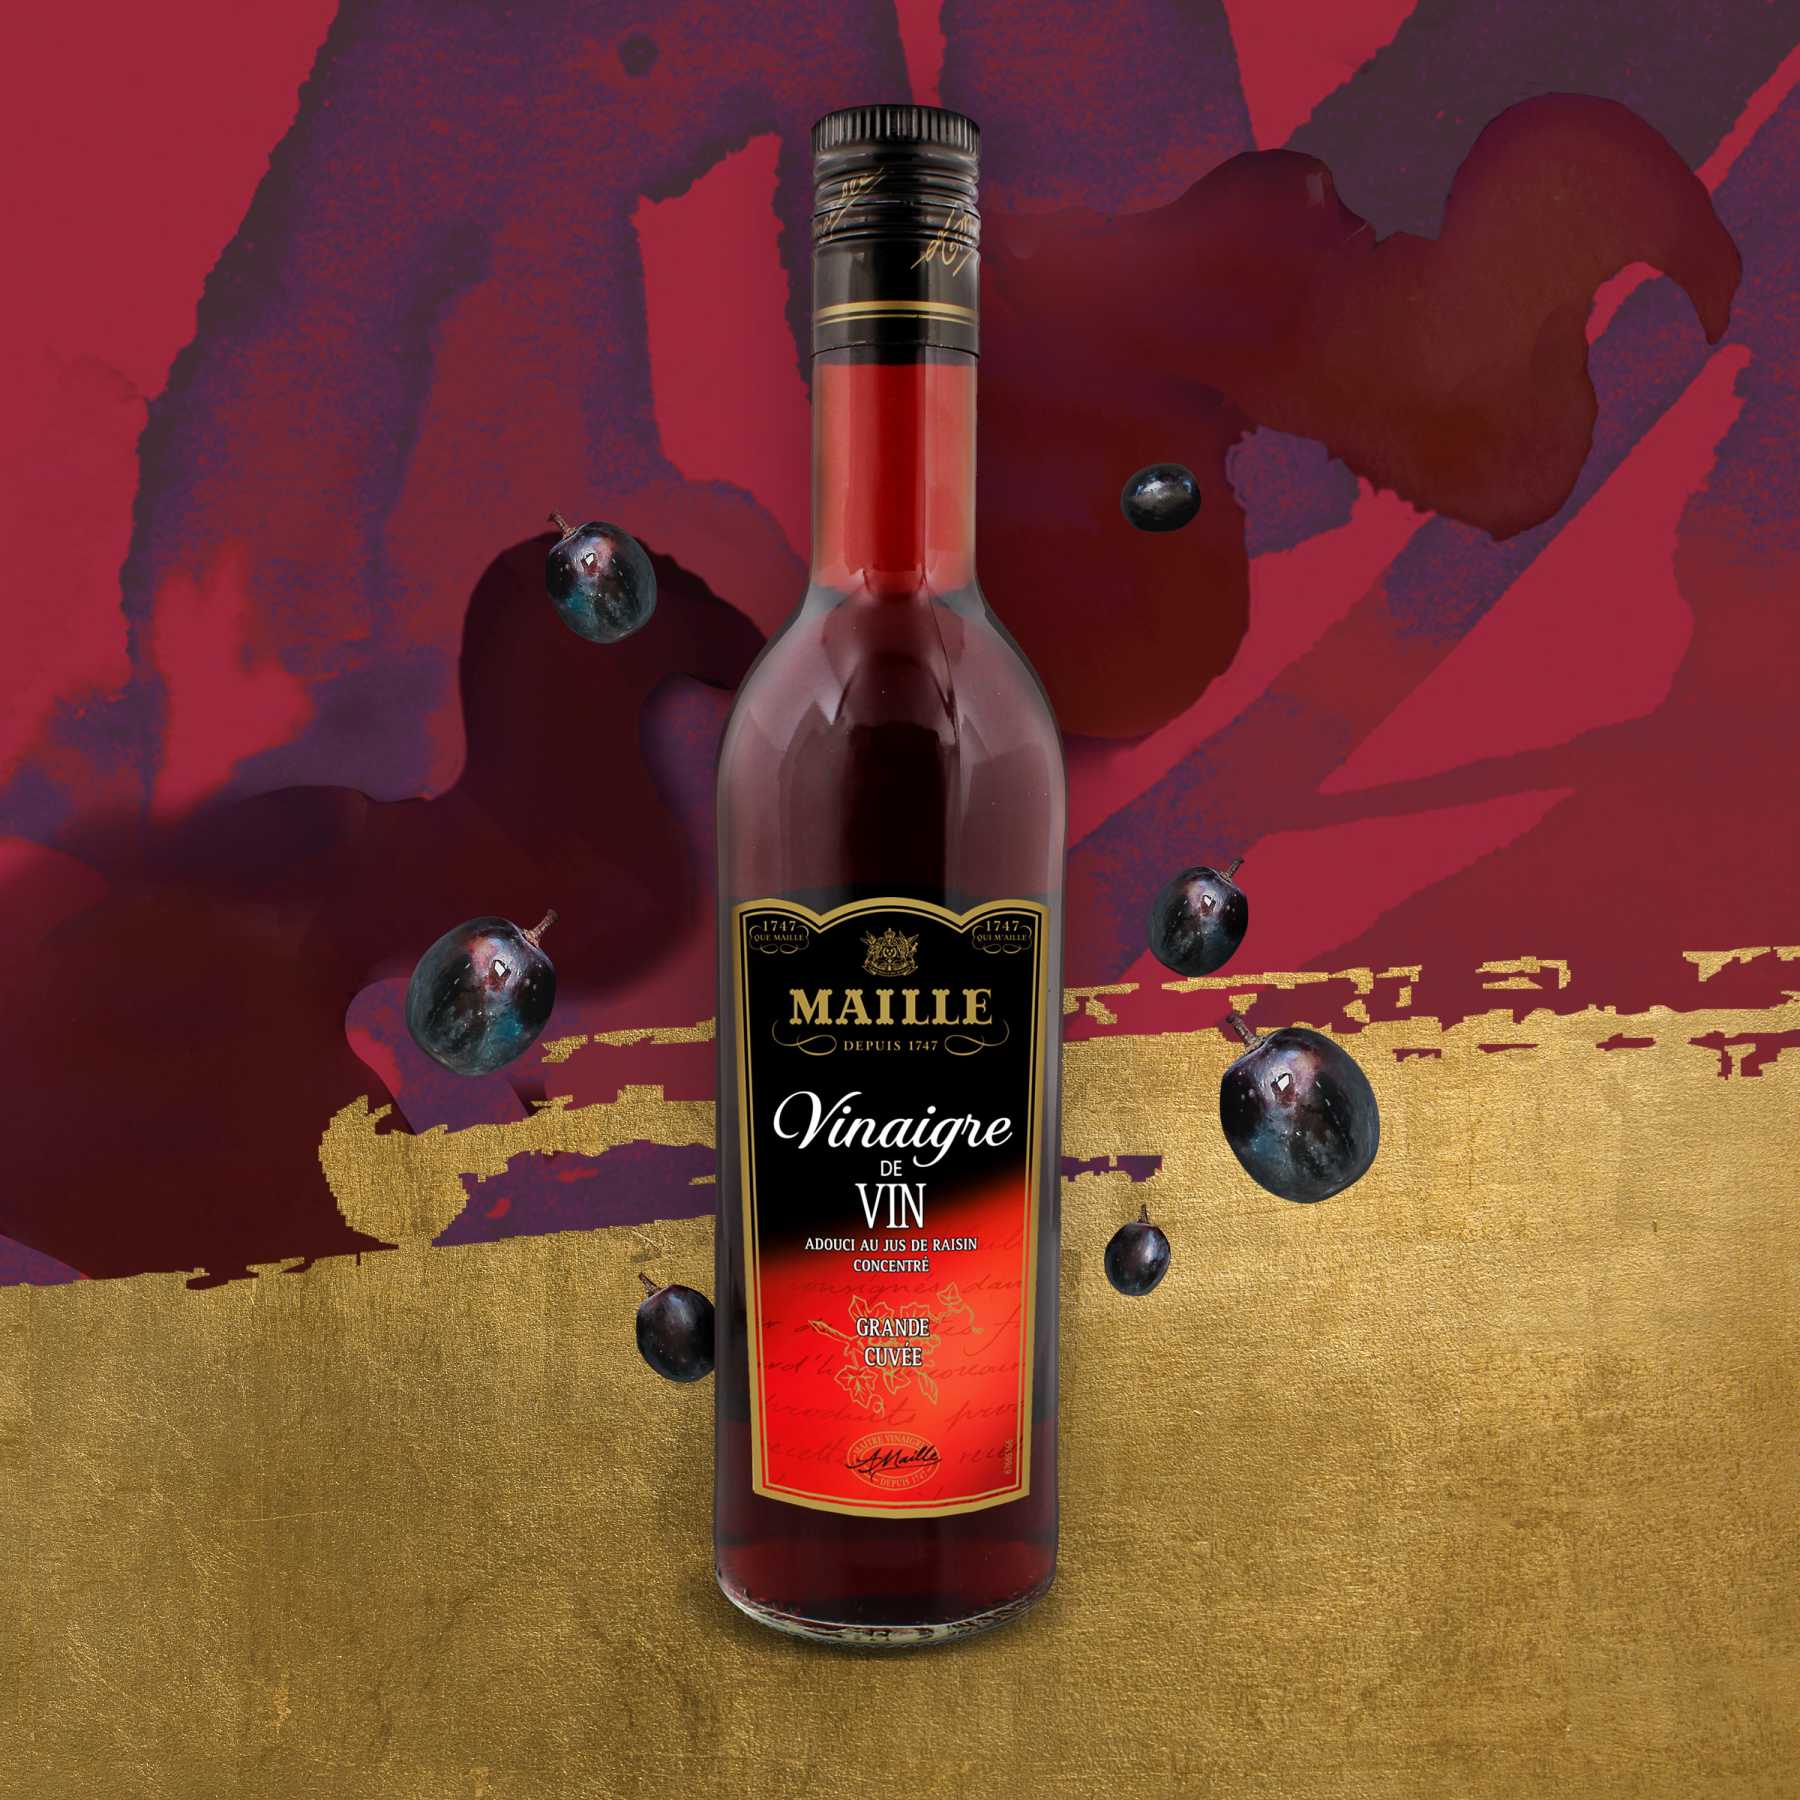 Maille - Vinaigre de Vin Rouge adouci au jus de raisin concentré 50 cl, new visual